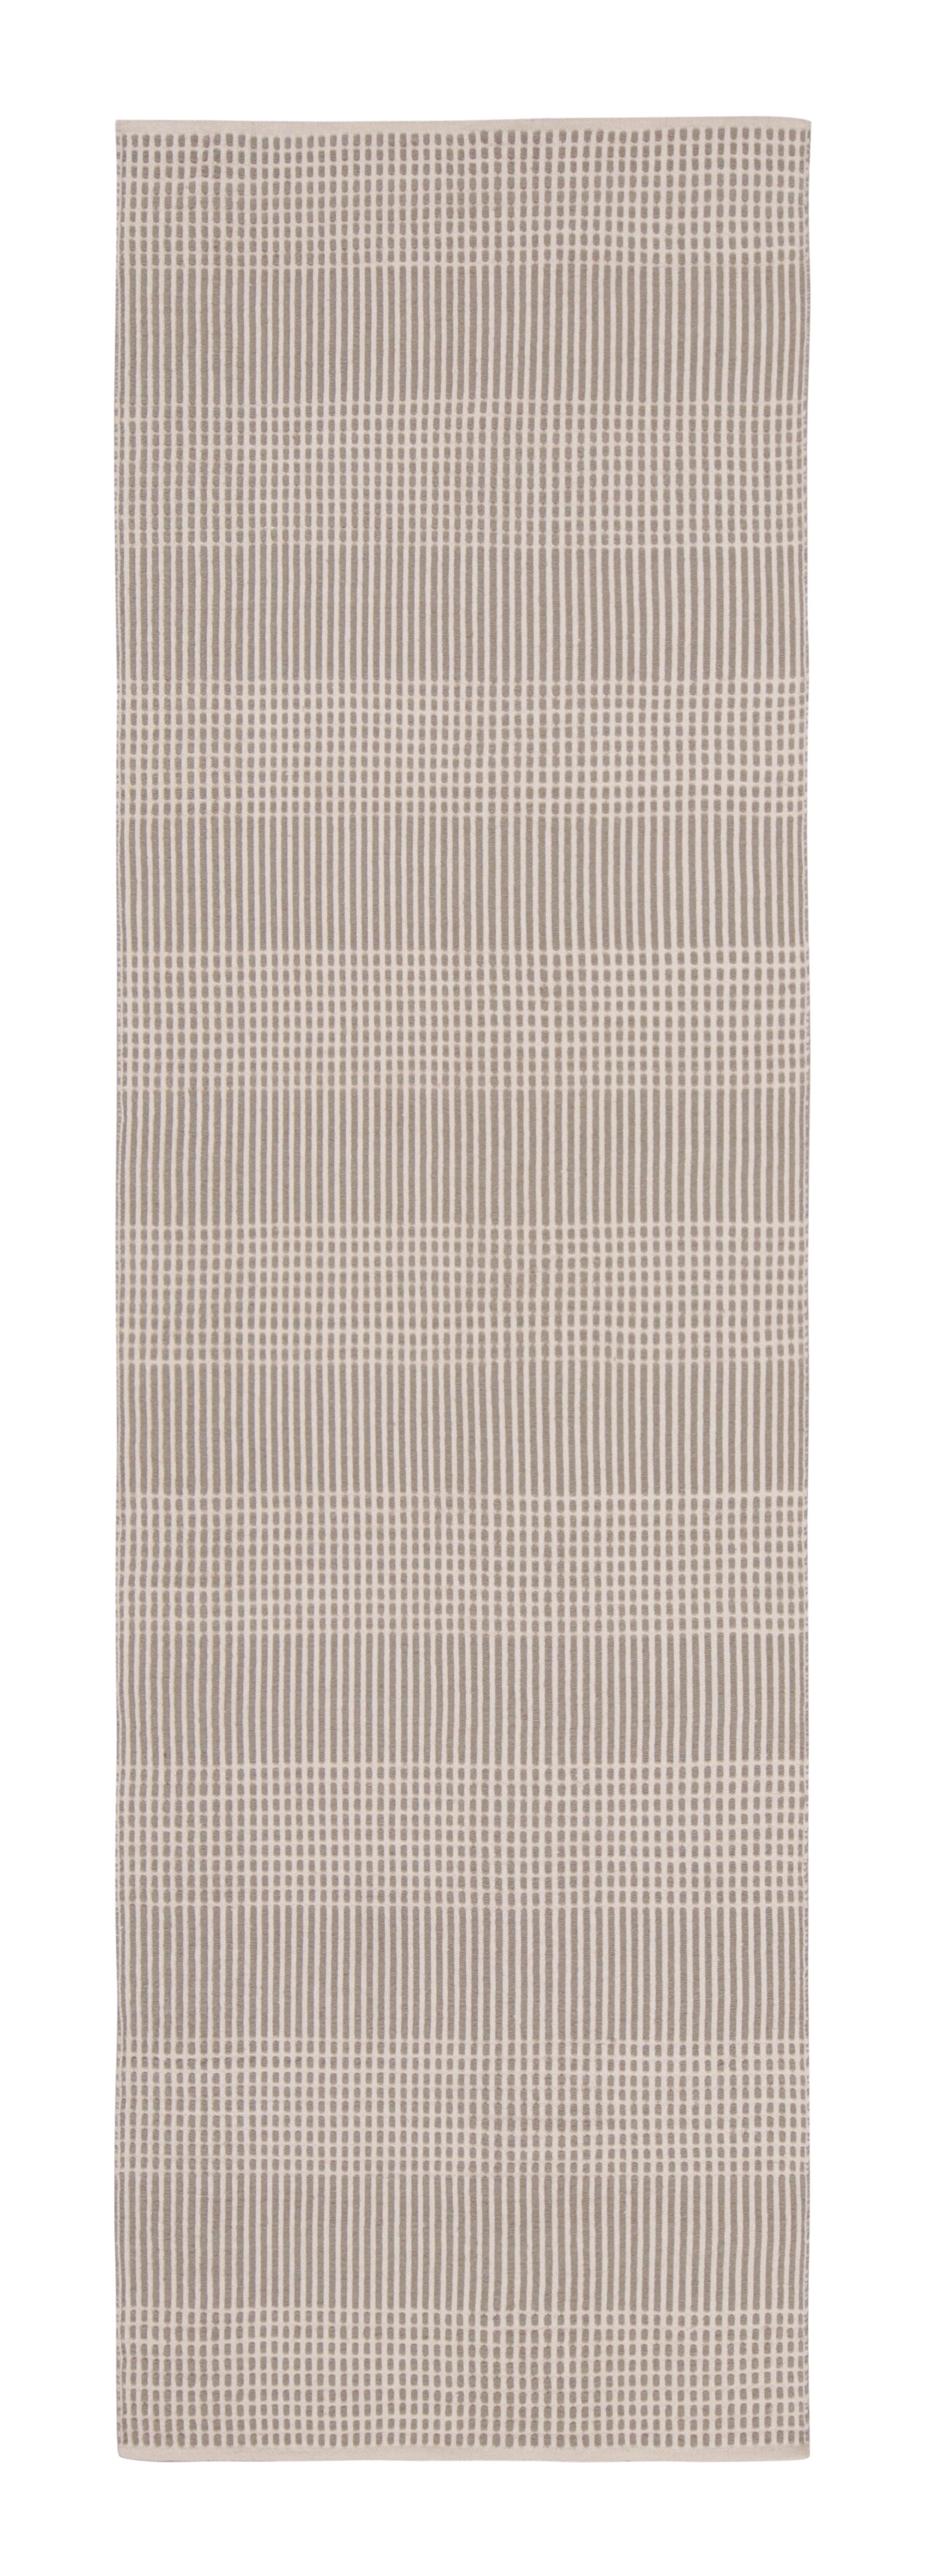 Tapis et tapis Kilim moderne à tissage plat beige marron à motifs géométriques rayés